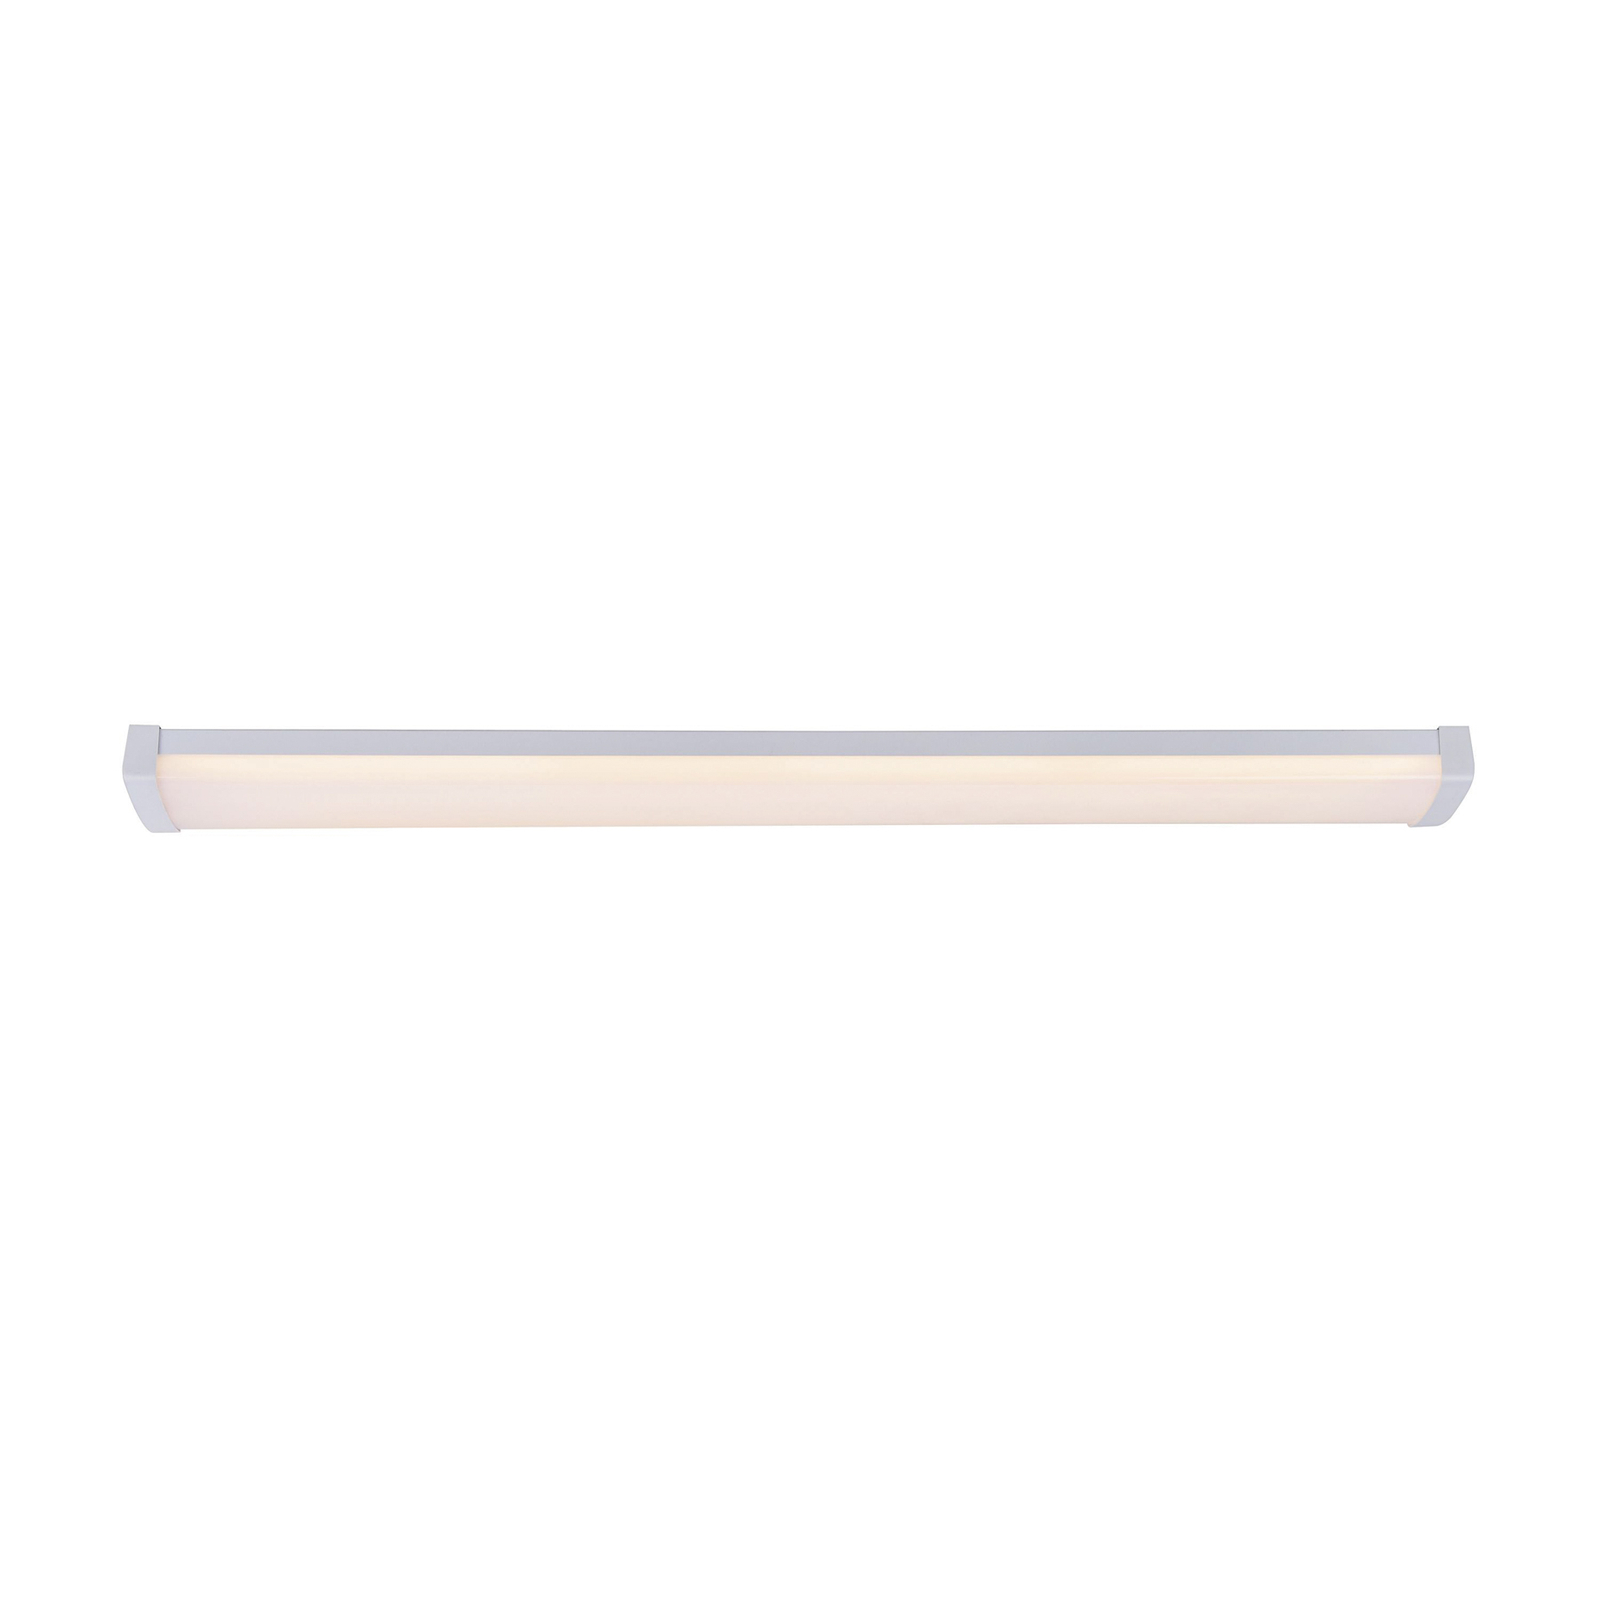 Wilmington LED batten light, length 90.5 cm, white, plastic